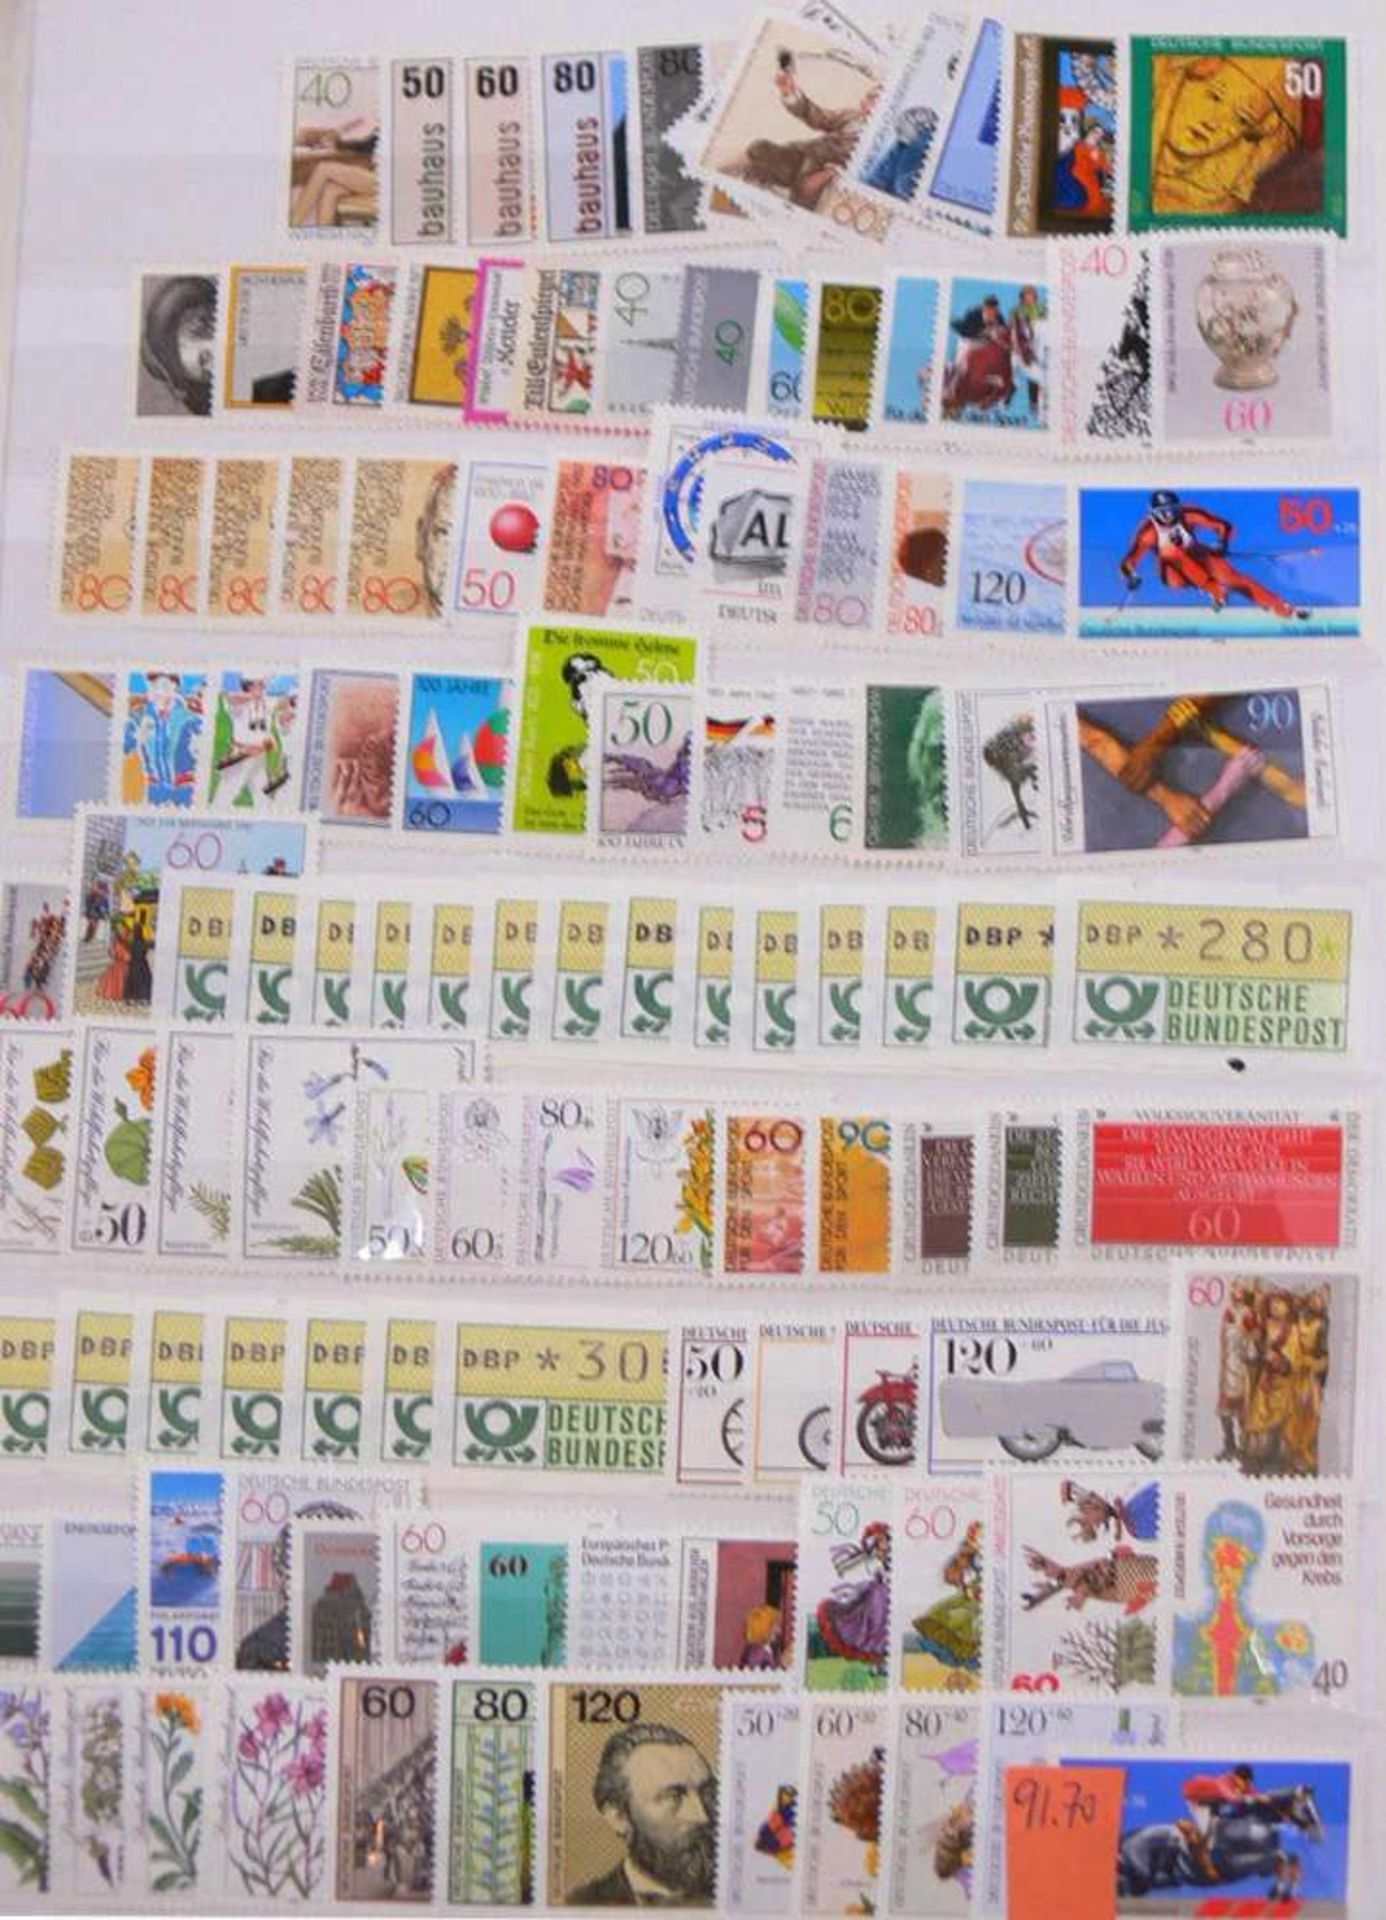 Reserve: 30 EUR        Bundesrepublik Deutschland, 1969-1995, dickes Steckbuch mit ehemaliger DM- - Image 3 of 6